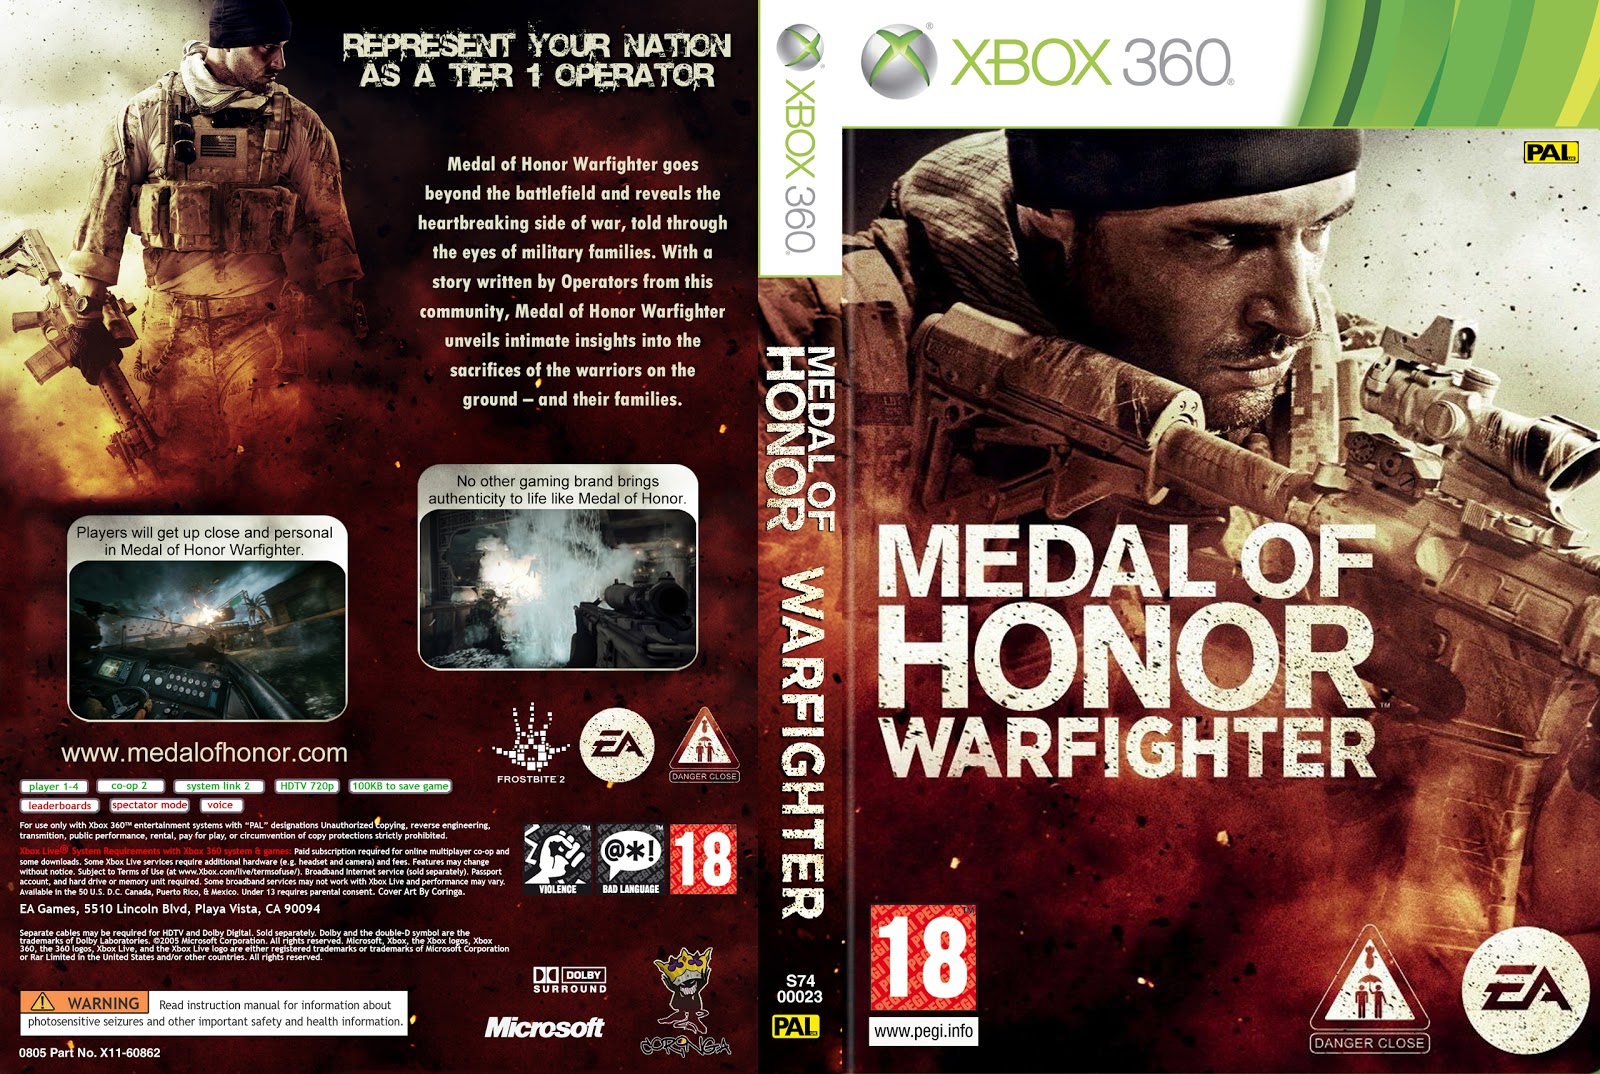 Medal of honor читы. Медаль оф хонор 2010 диск. Диск медал оф хонор. Medal of Honor Warfighter Xbox 360. Medal of Honor Xbox 360 обложка для дисков.